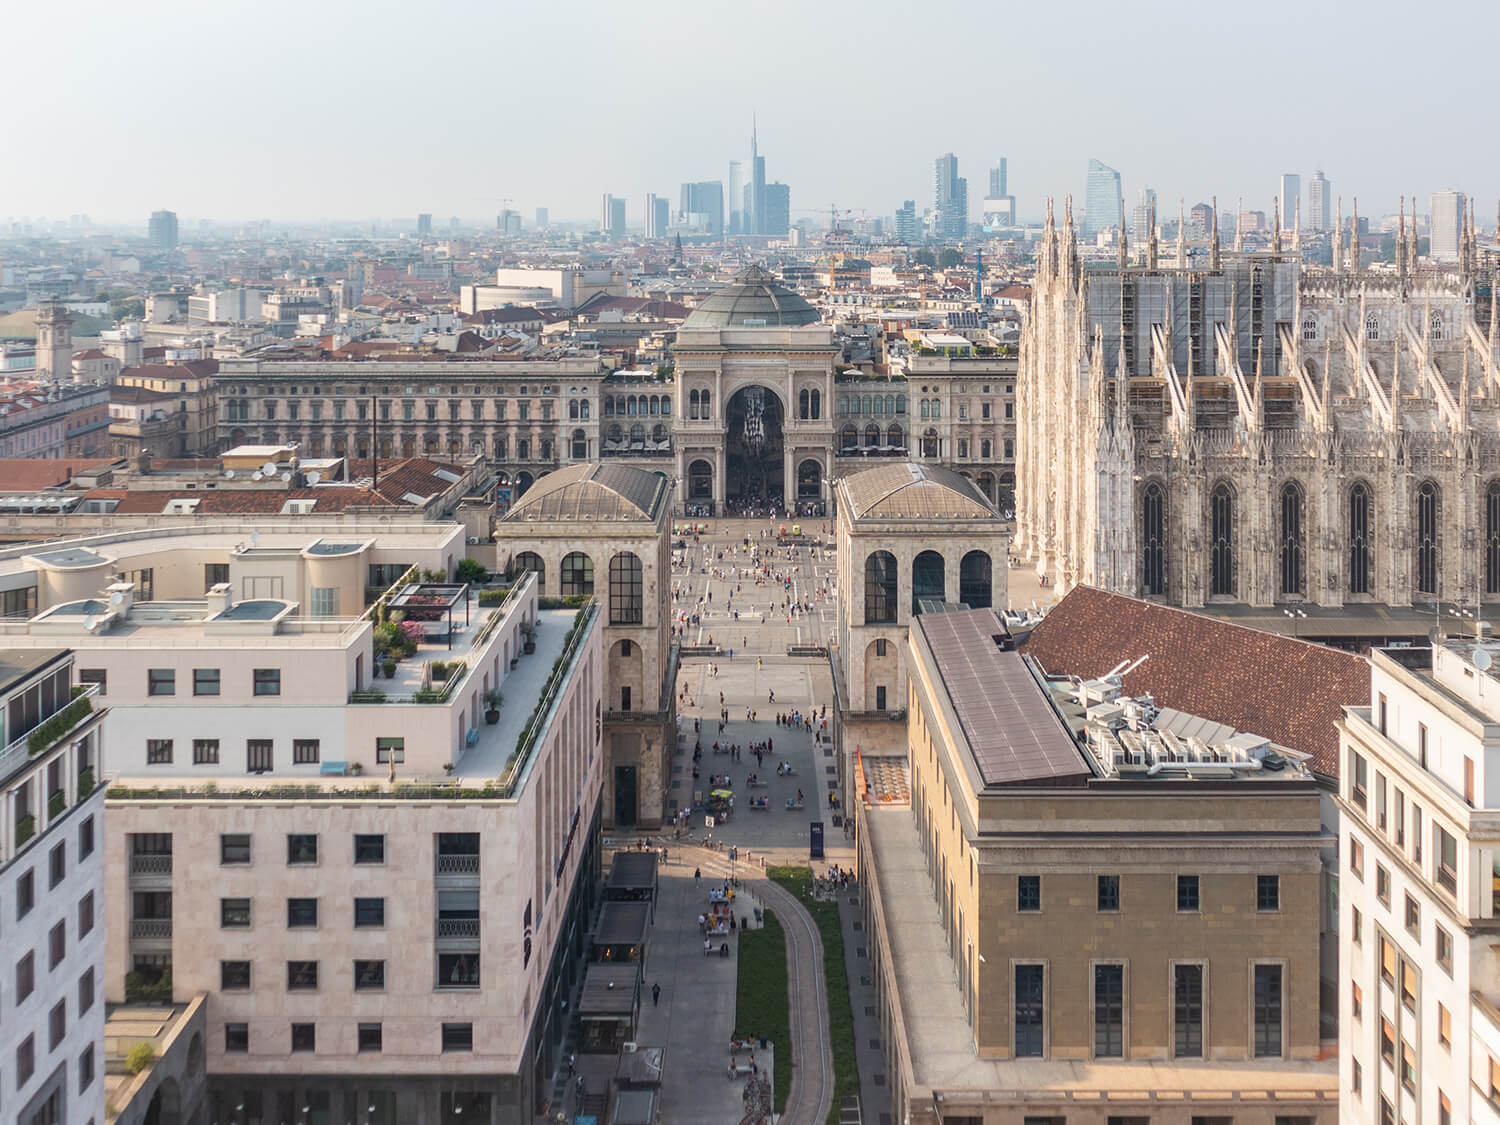 Comprare casa al centro storico di Milano: consigli e prezzi